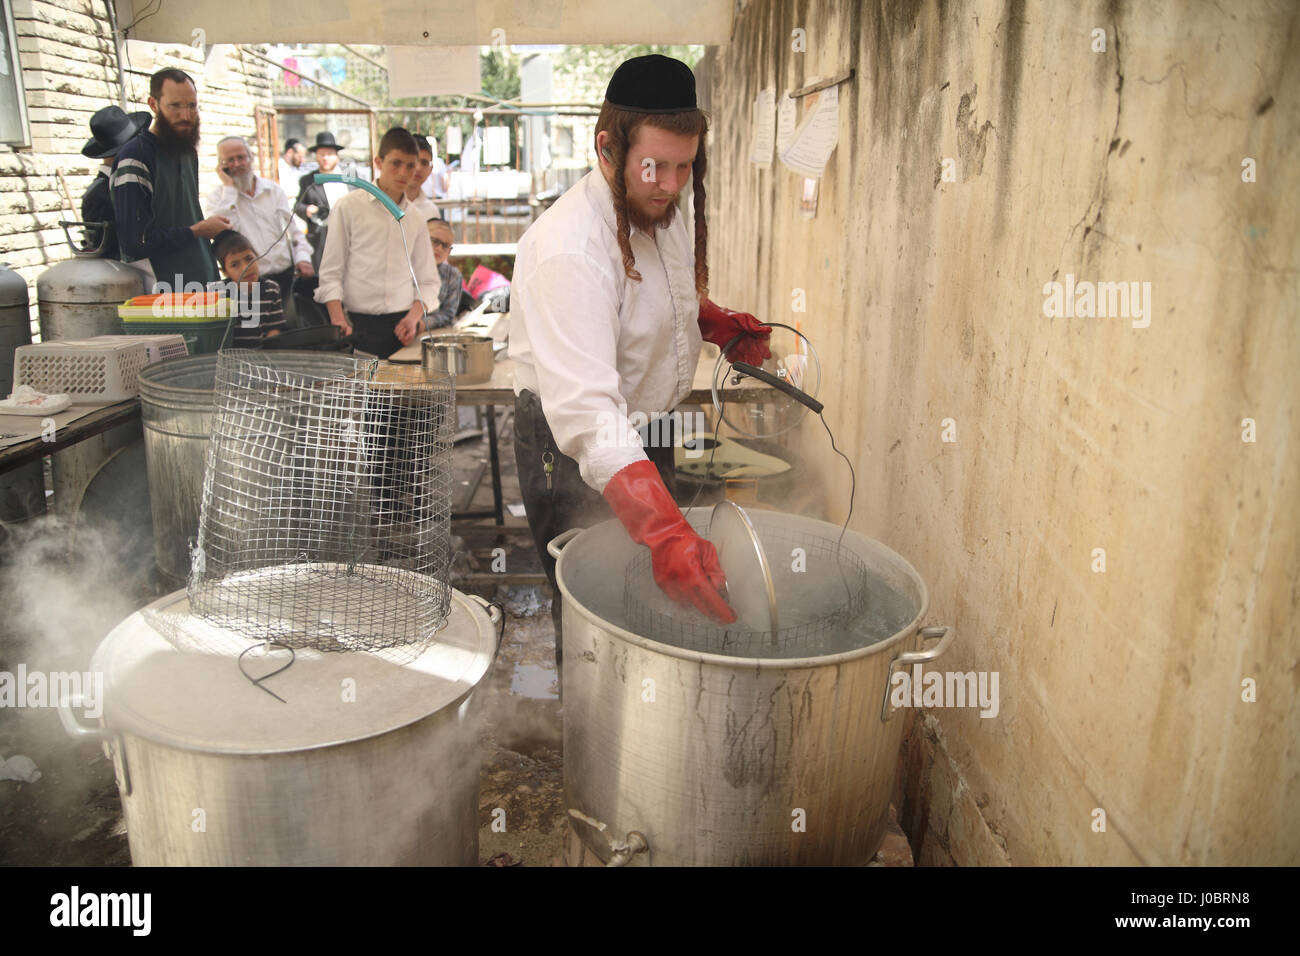 Un homme juif orthodoxe est payé par les clients pour l'immergeant dans l'eau bouillante des plats dans d'énormes pots pour les rendre casher pour les prochaines vacances de Pessah Banque D'Images